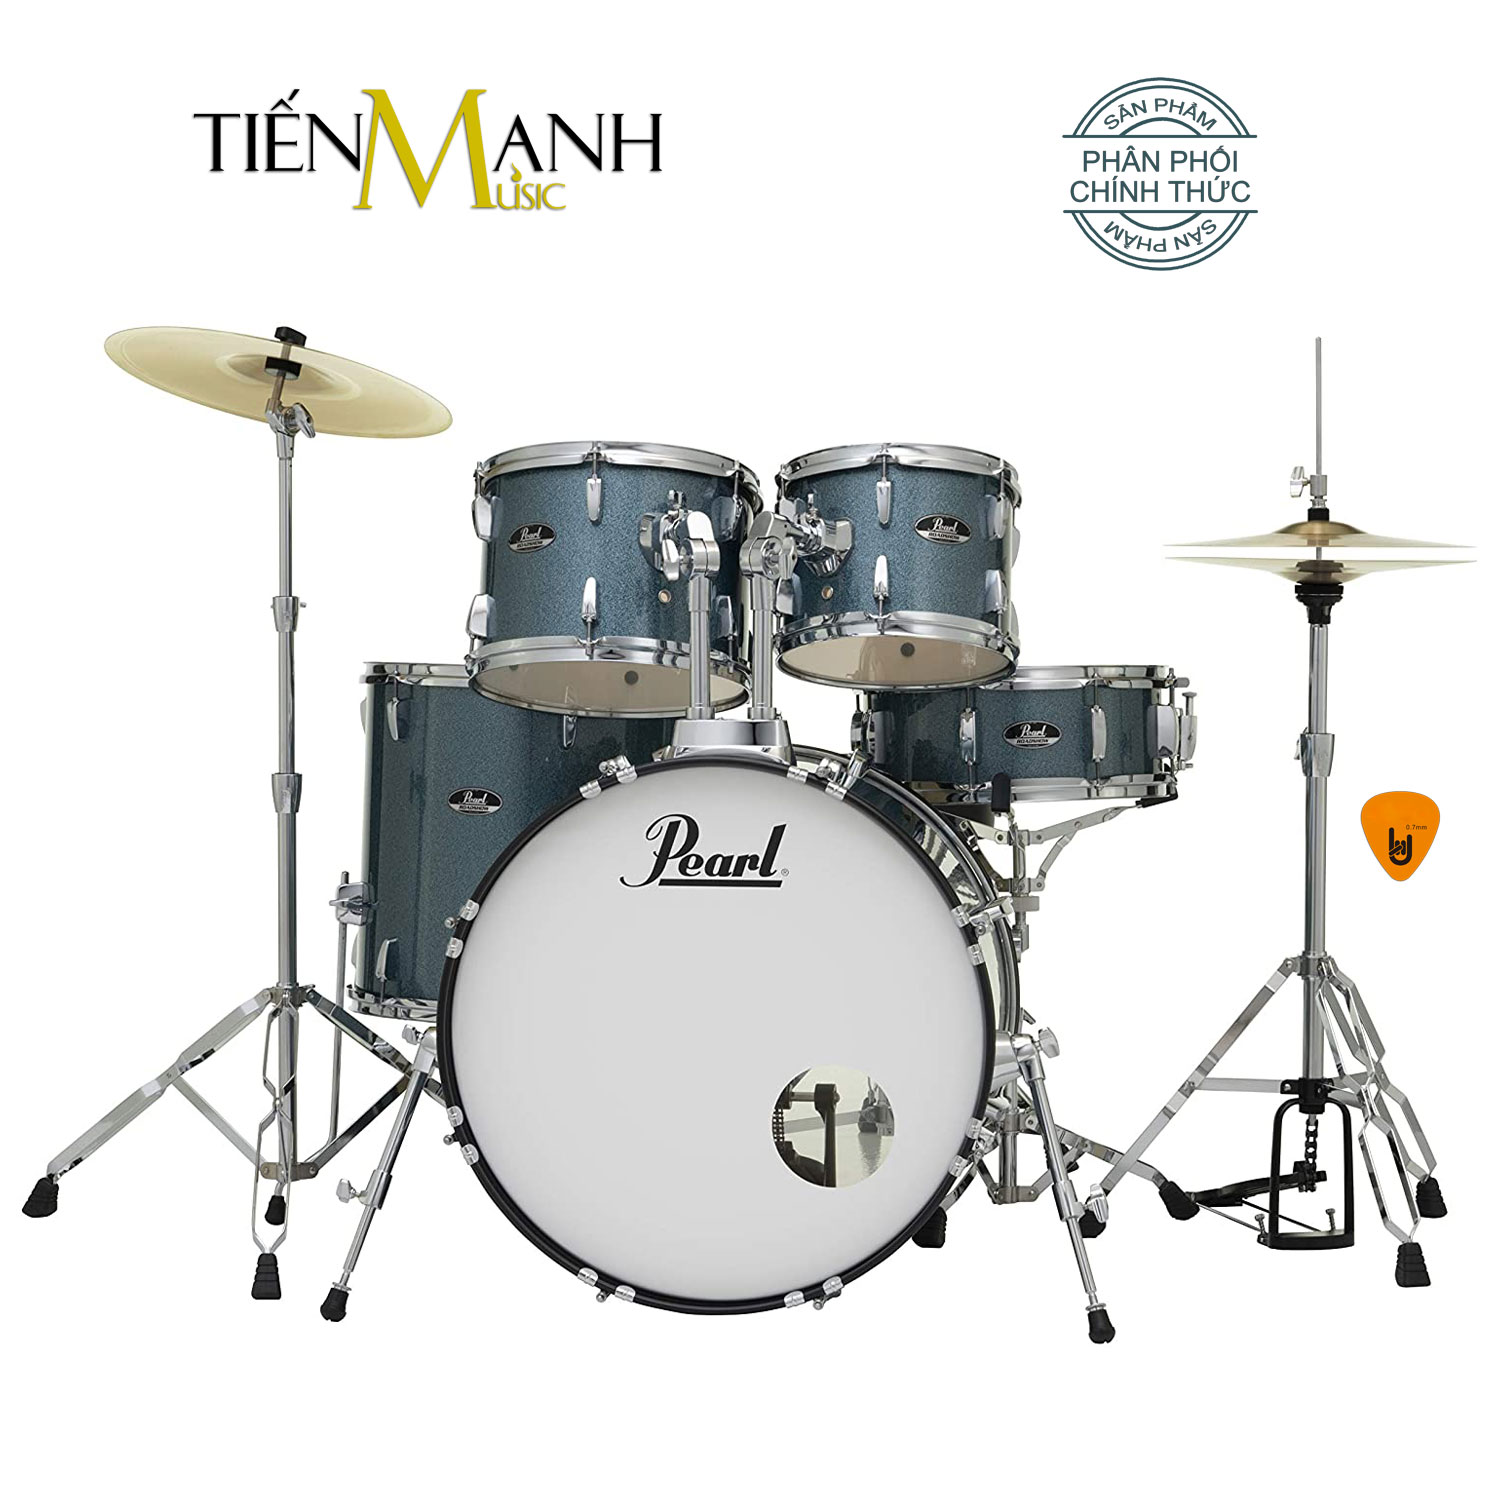 bộ trống dàn cơ pearl jazz drum rs525sc-c703 màu xanh biển glitter rs525scc703 hàng chính hãng - kèm móng gẩy dreammaker 1